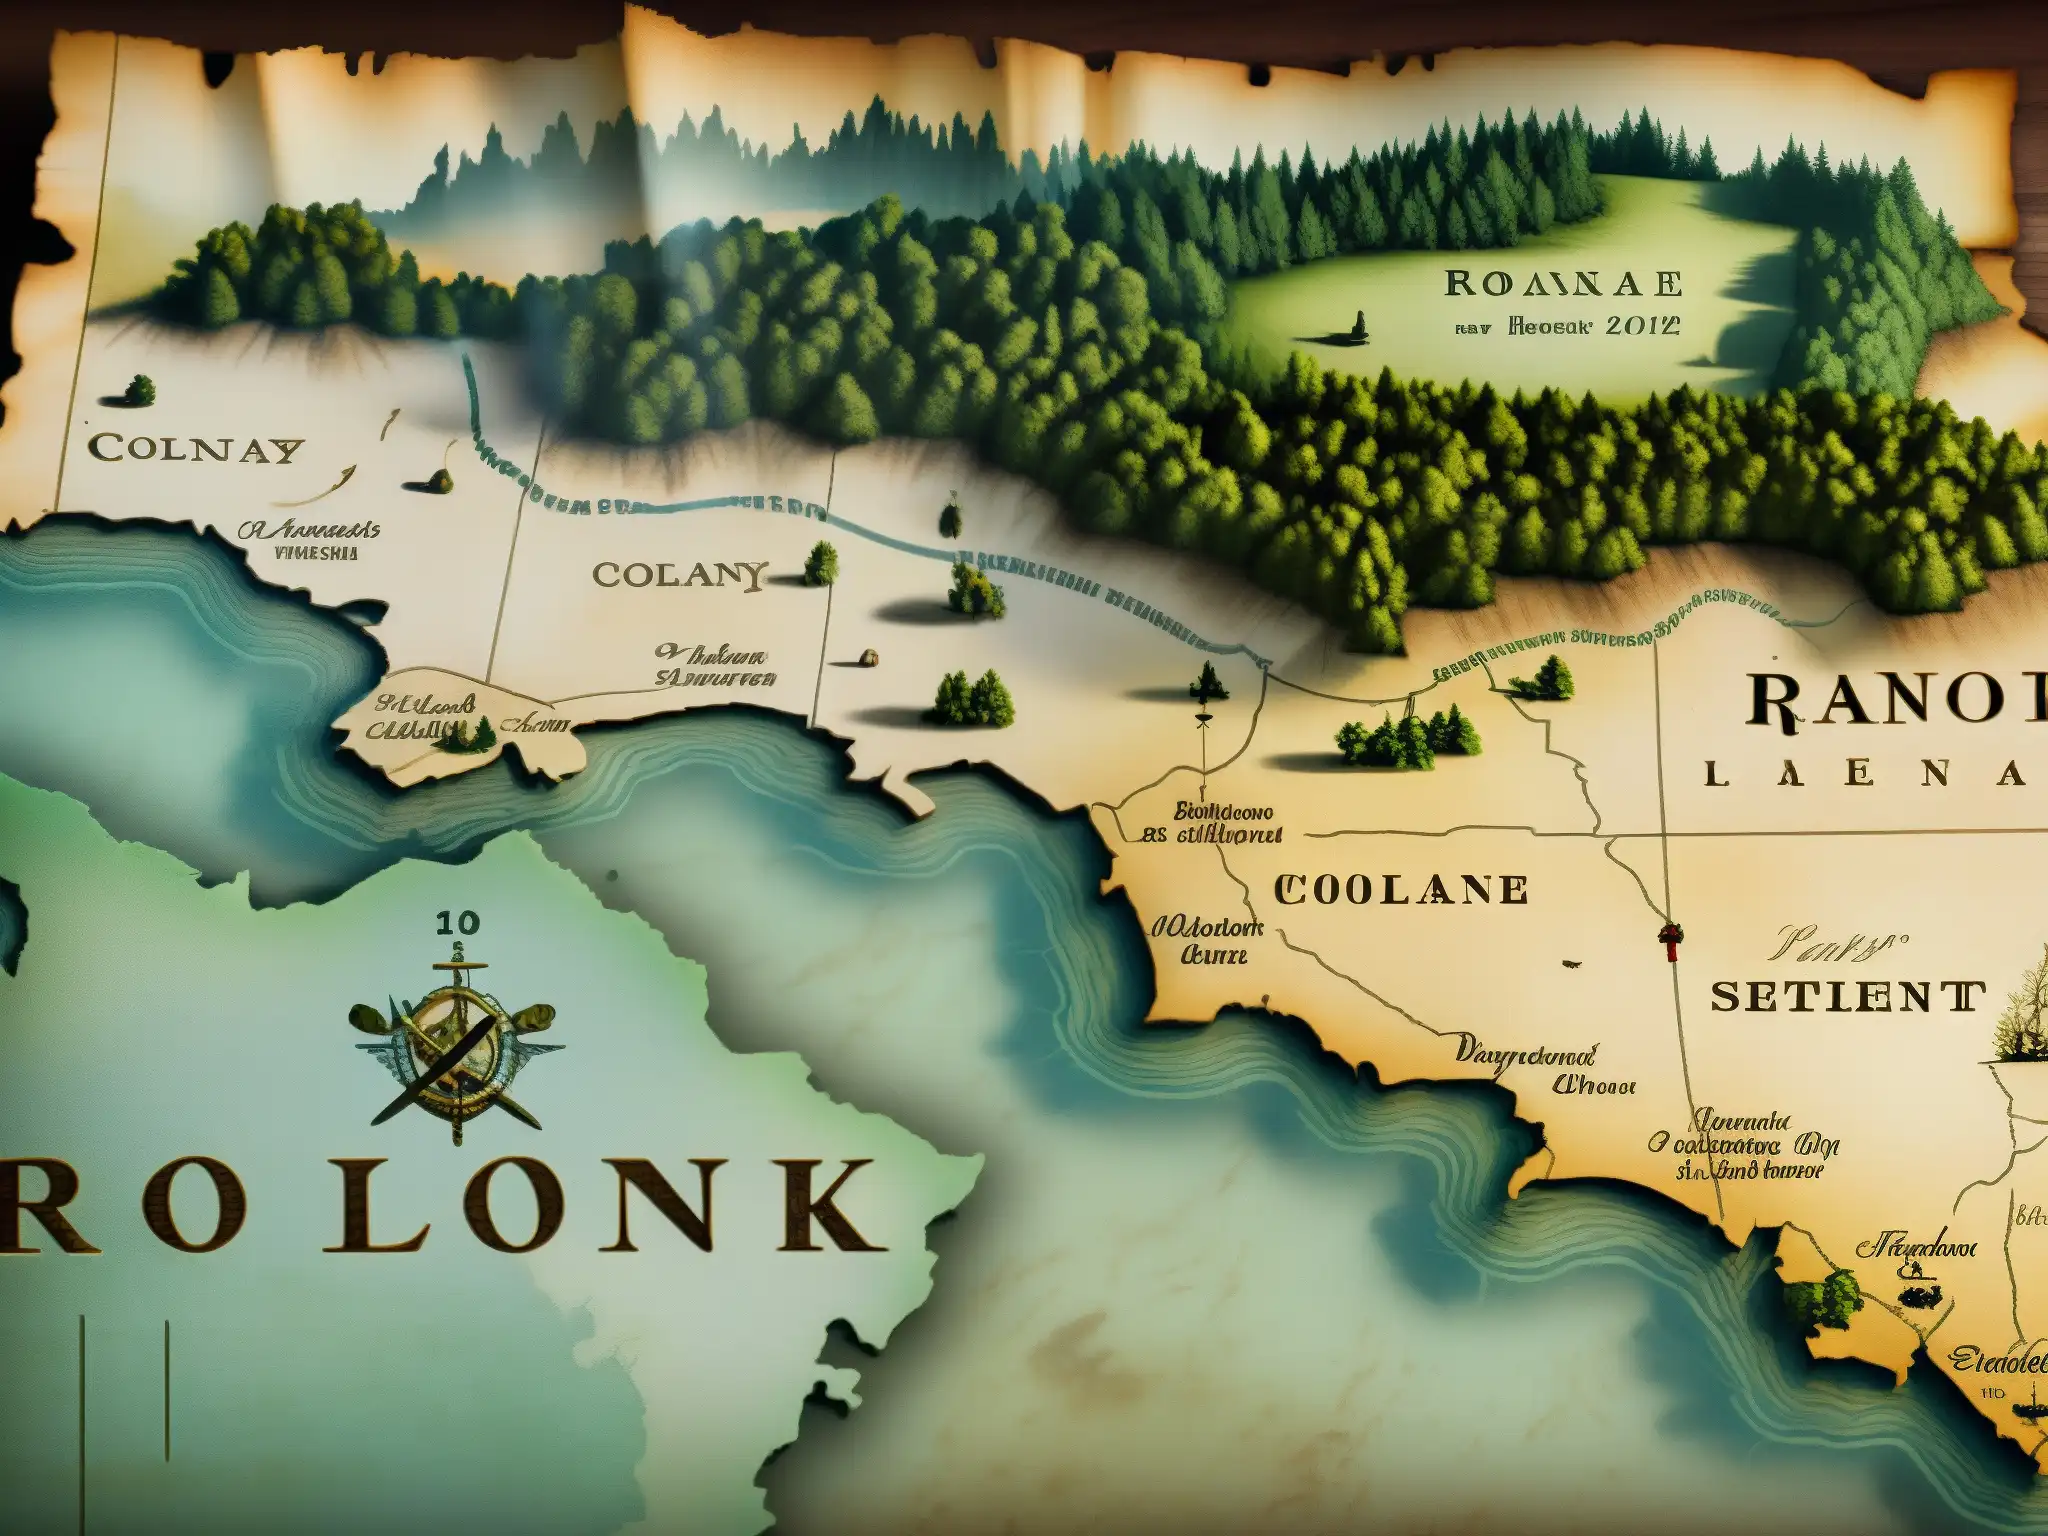 Mapa envejecido de la colonia Roanoke, con detalles intrincados